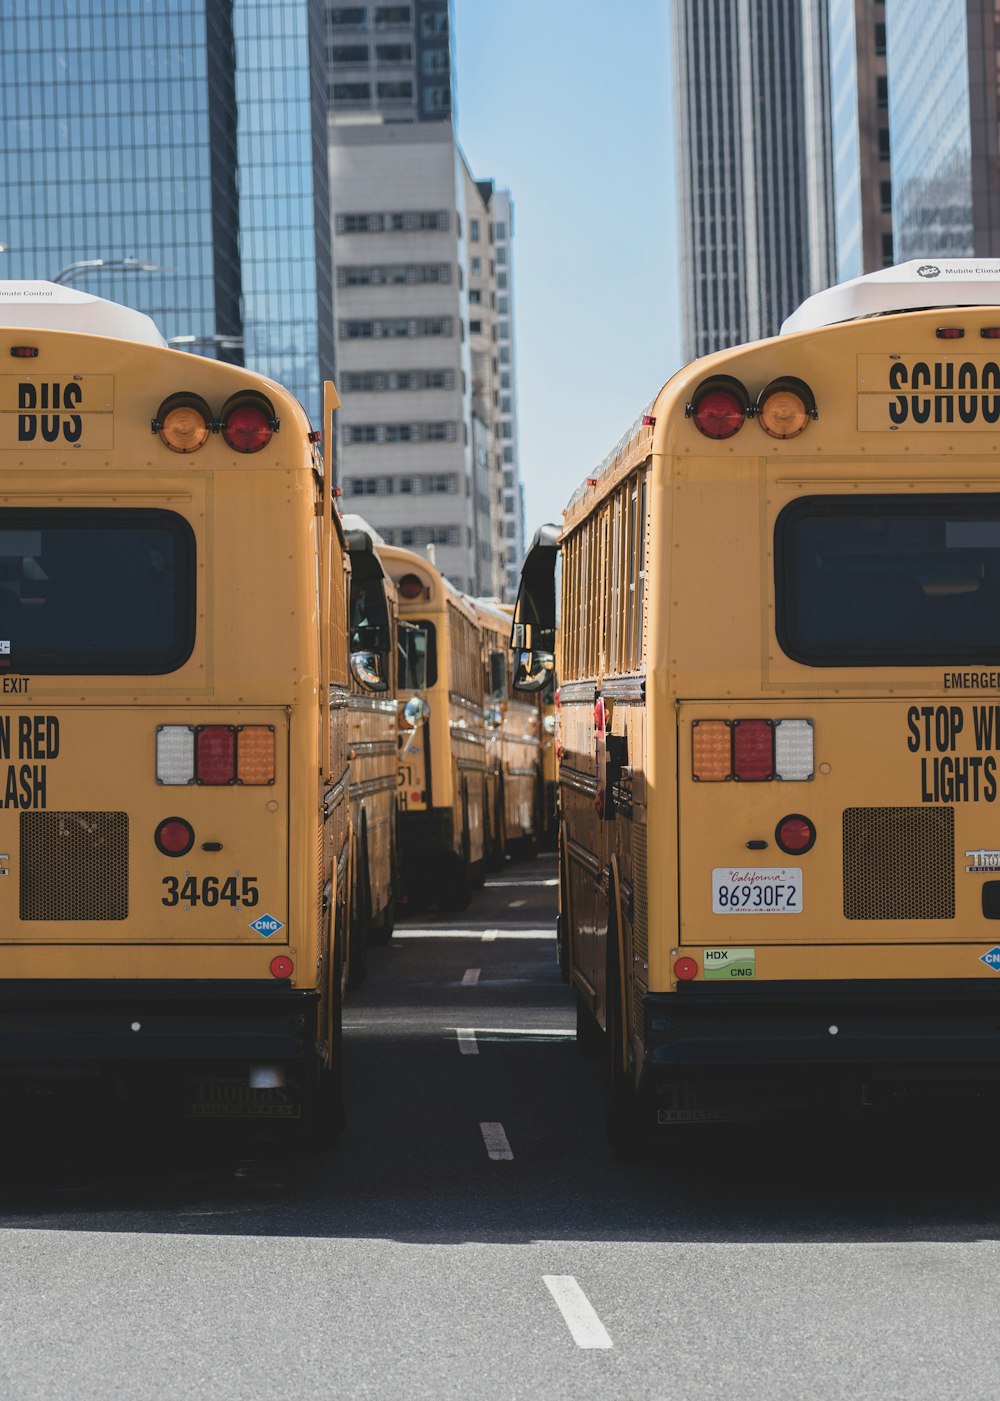 Autobuses escolares en carretera durante el día